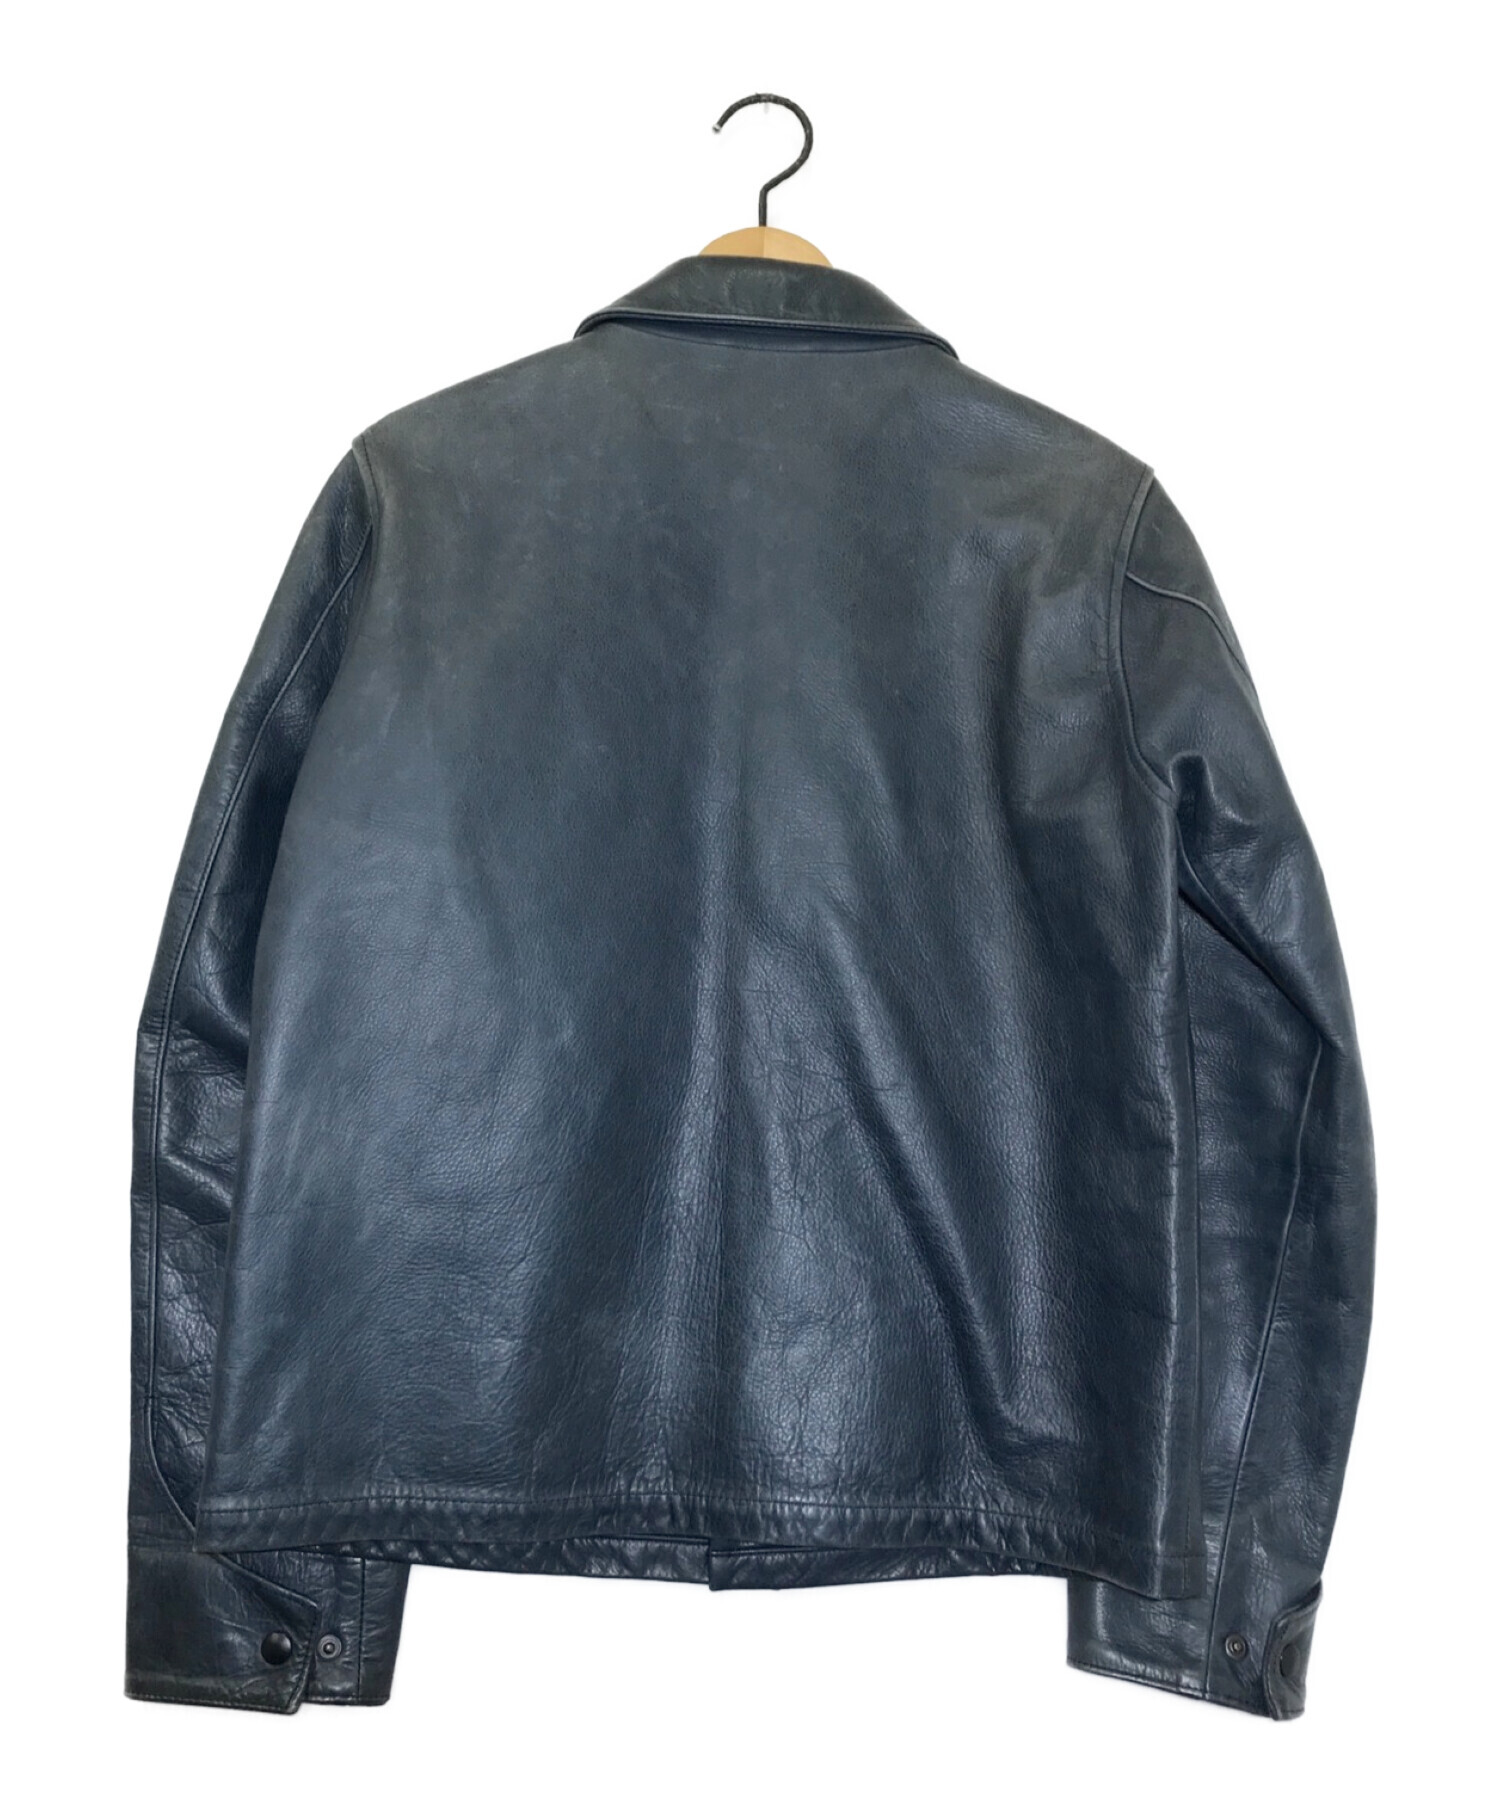 値段…98000＋taxSON OF THE CHEESE  A2all leather JKT